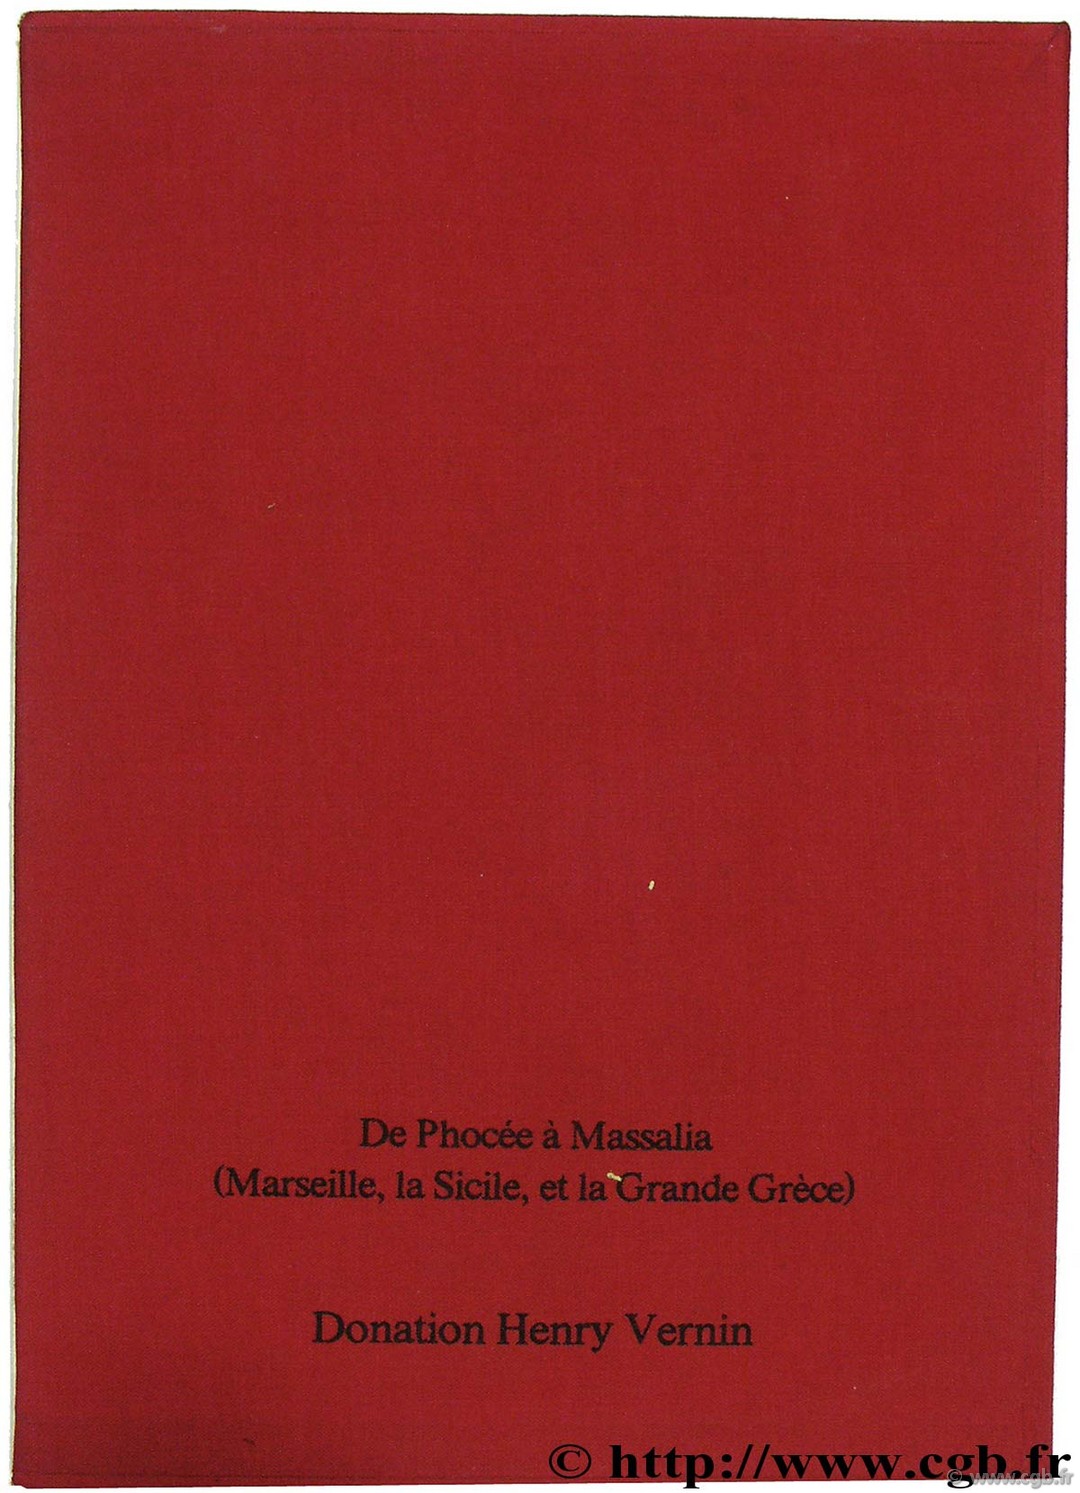 De Phocée à Massalia (Marseille, la Sicile et la Grande Grèce) BRENOT C., SIAS C.